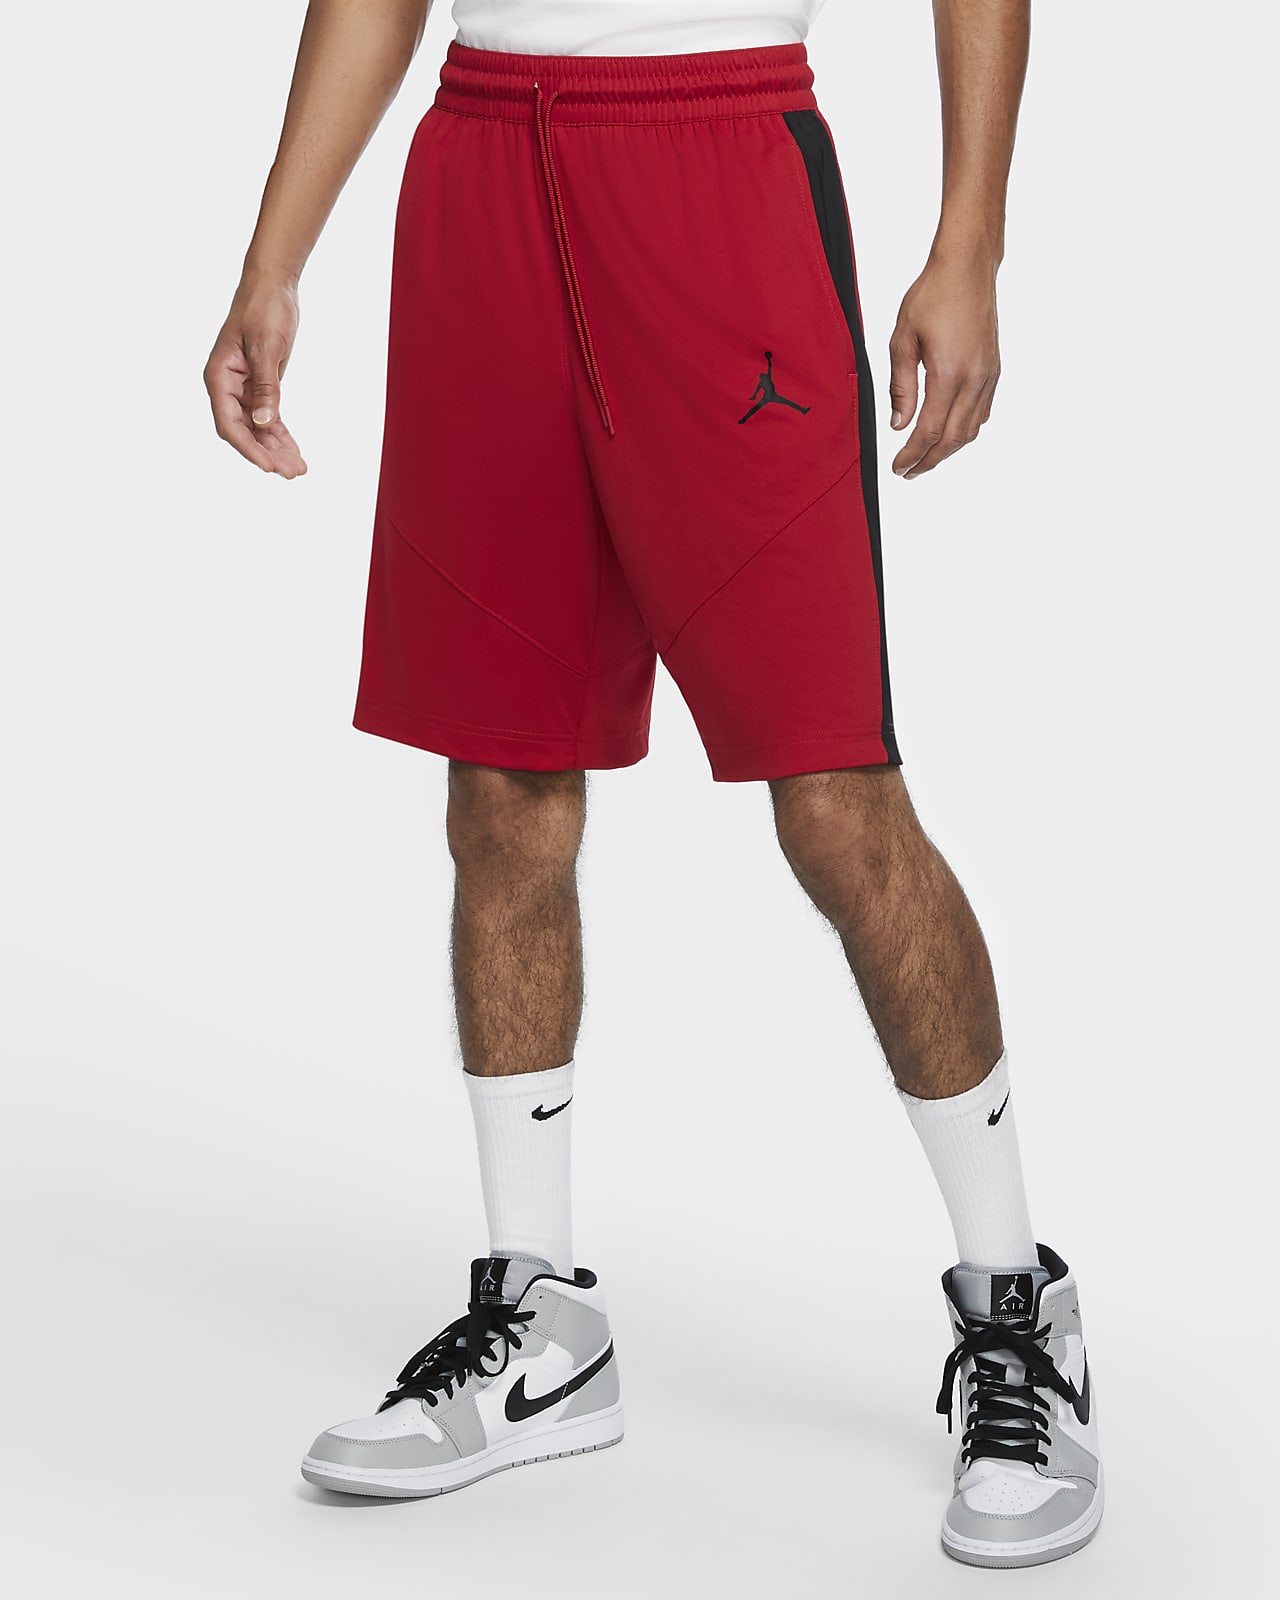 Shorts de básquetbol para hombre Jordan Jumpman. Nike.com